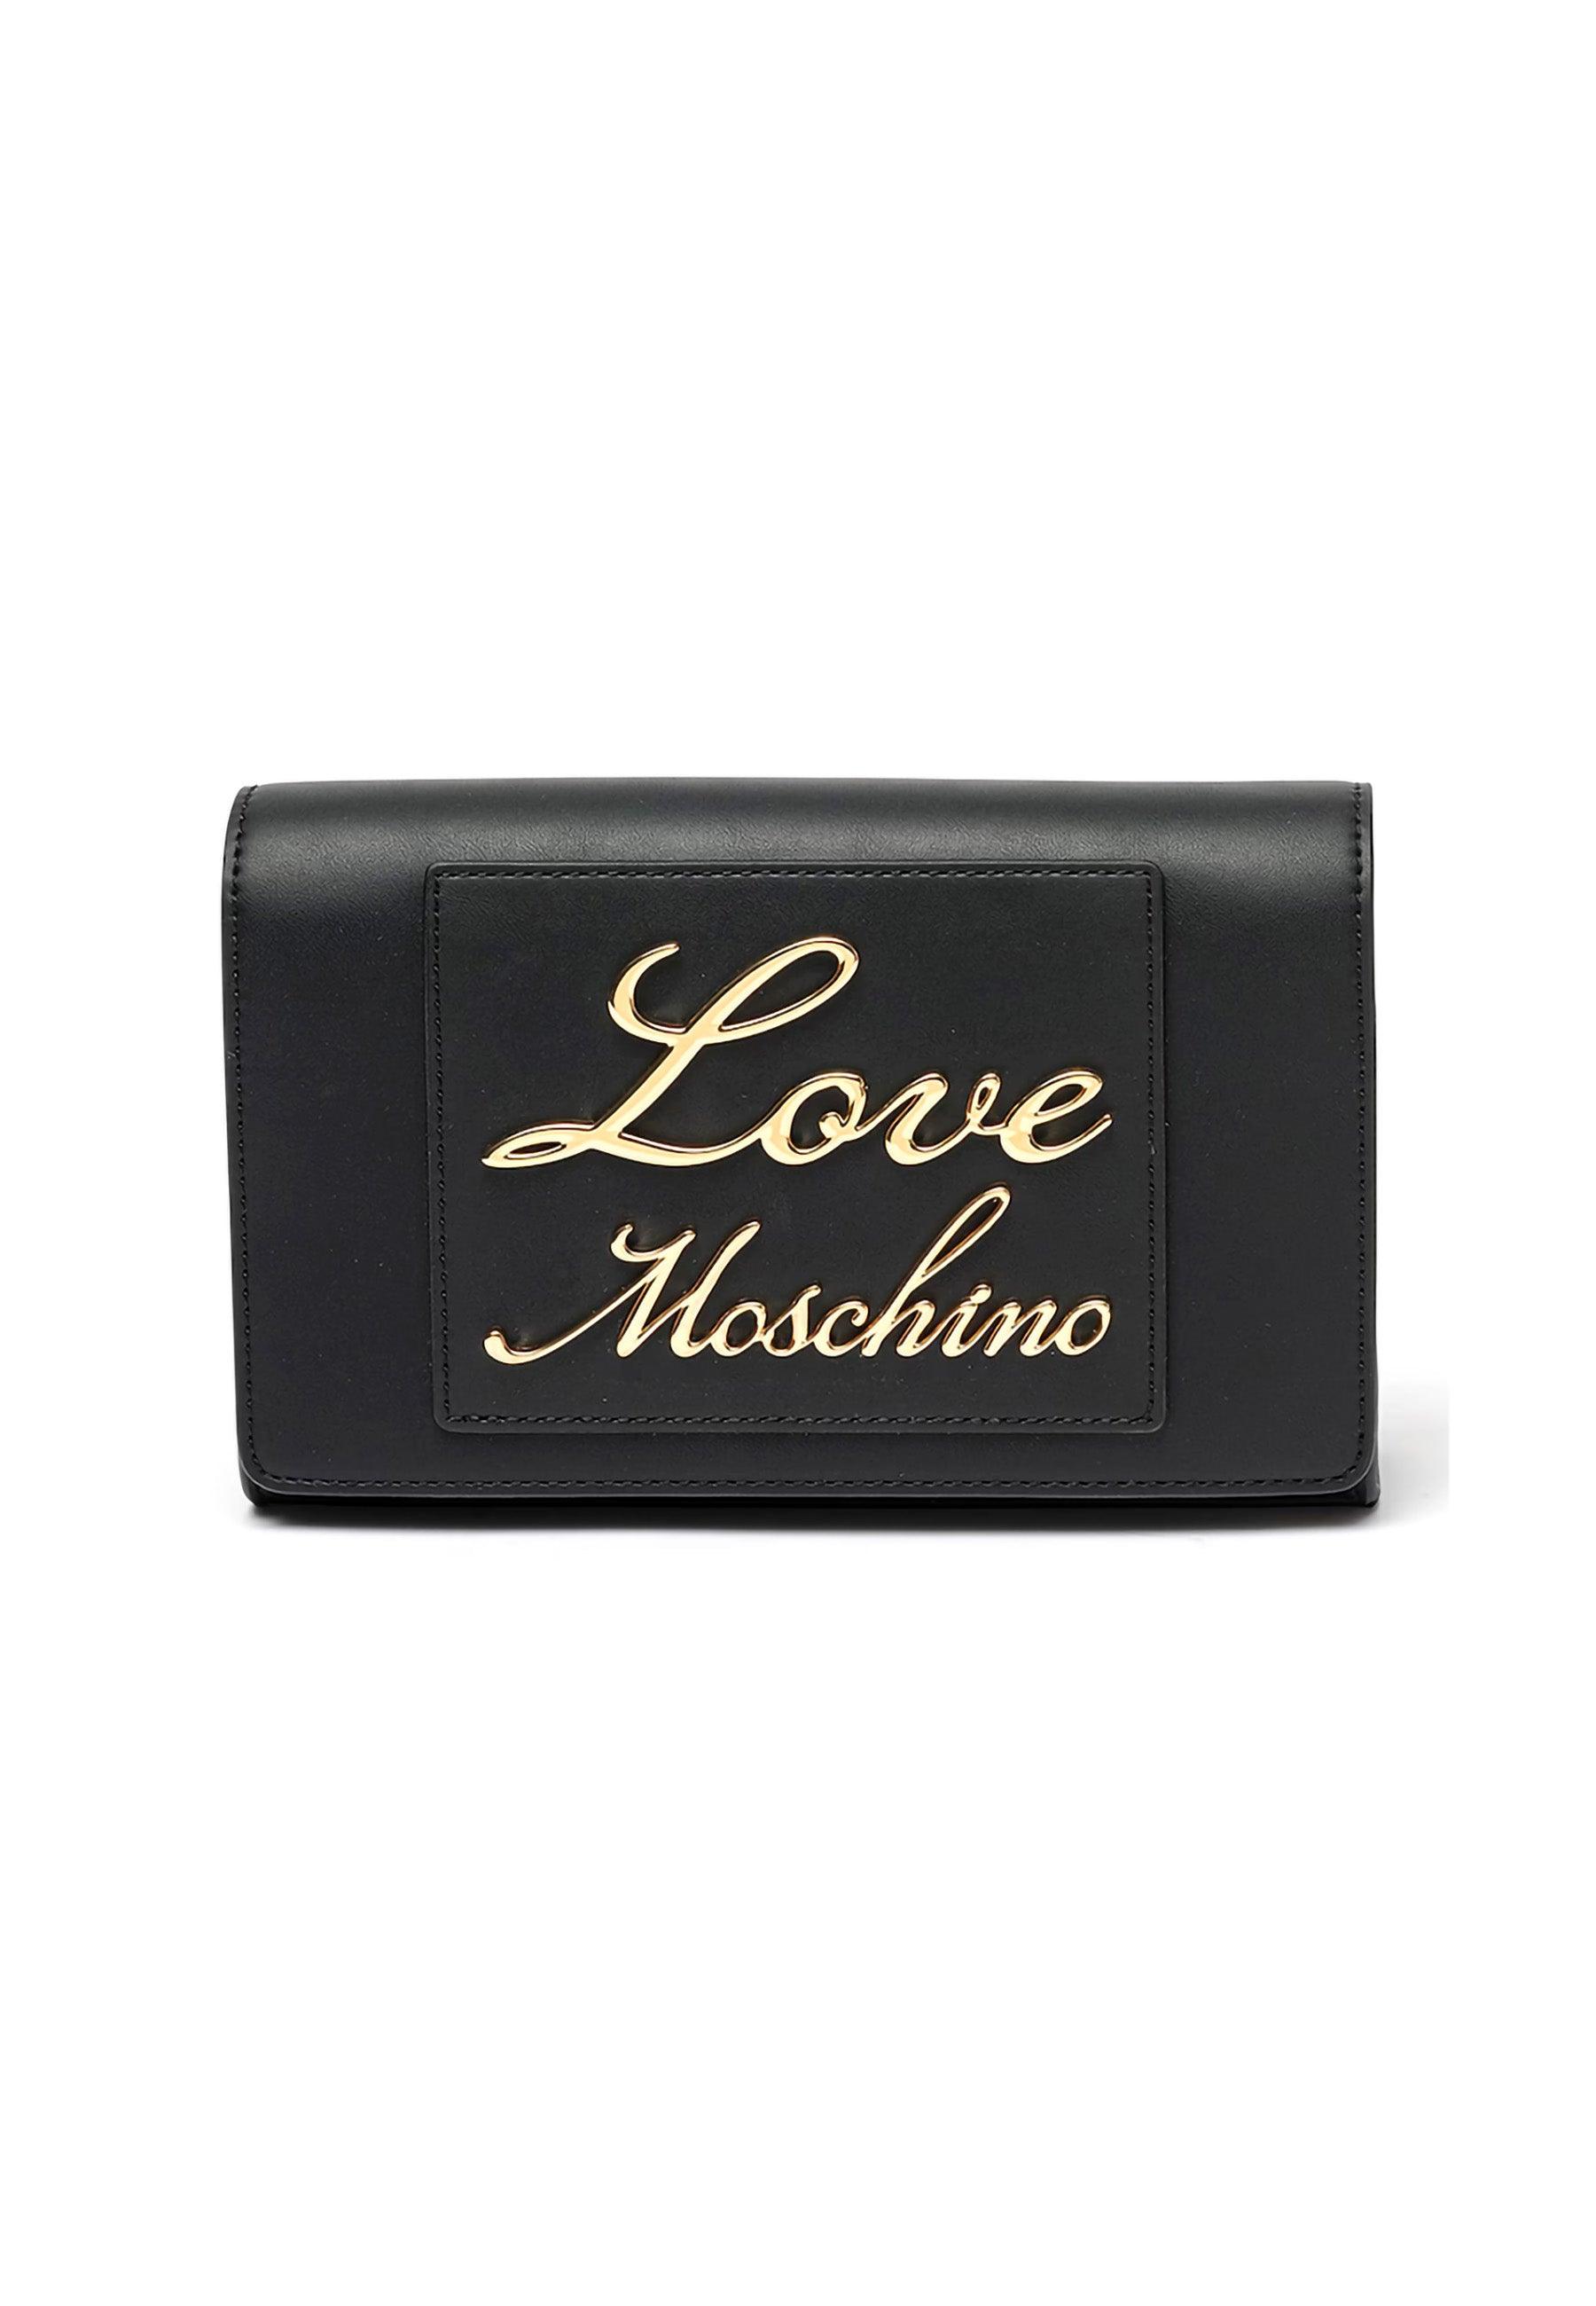 LOVE MOSCHINO Borsa Tracolla Donna Nero JC4121PP1ILM0000 - Sandrini Calzature e Abbigliamento